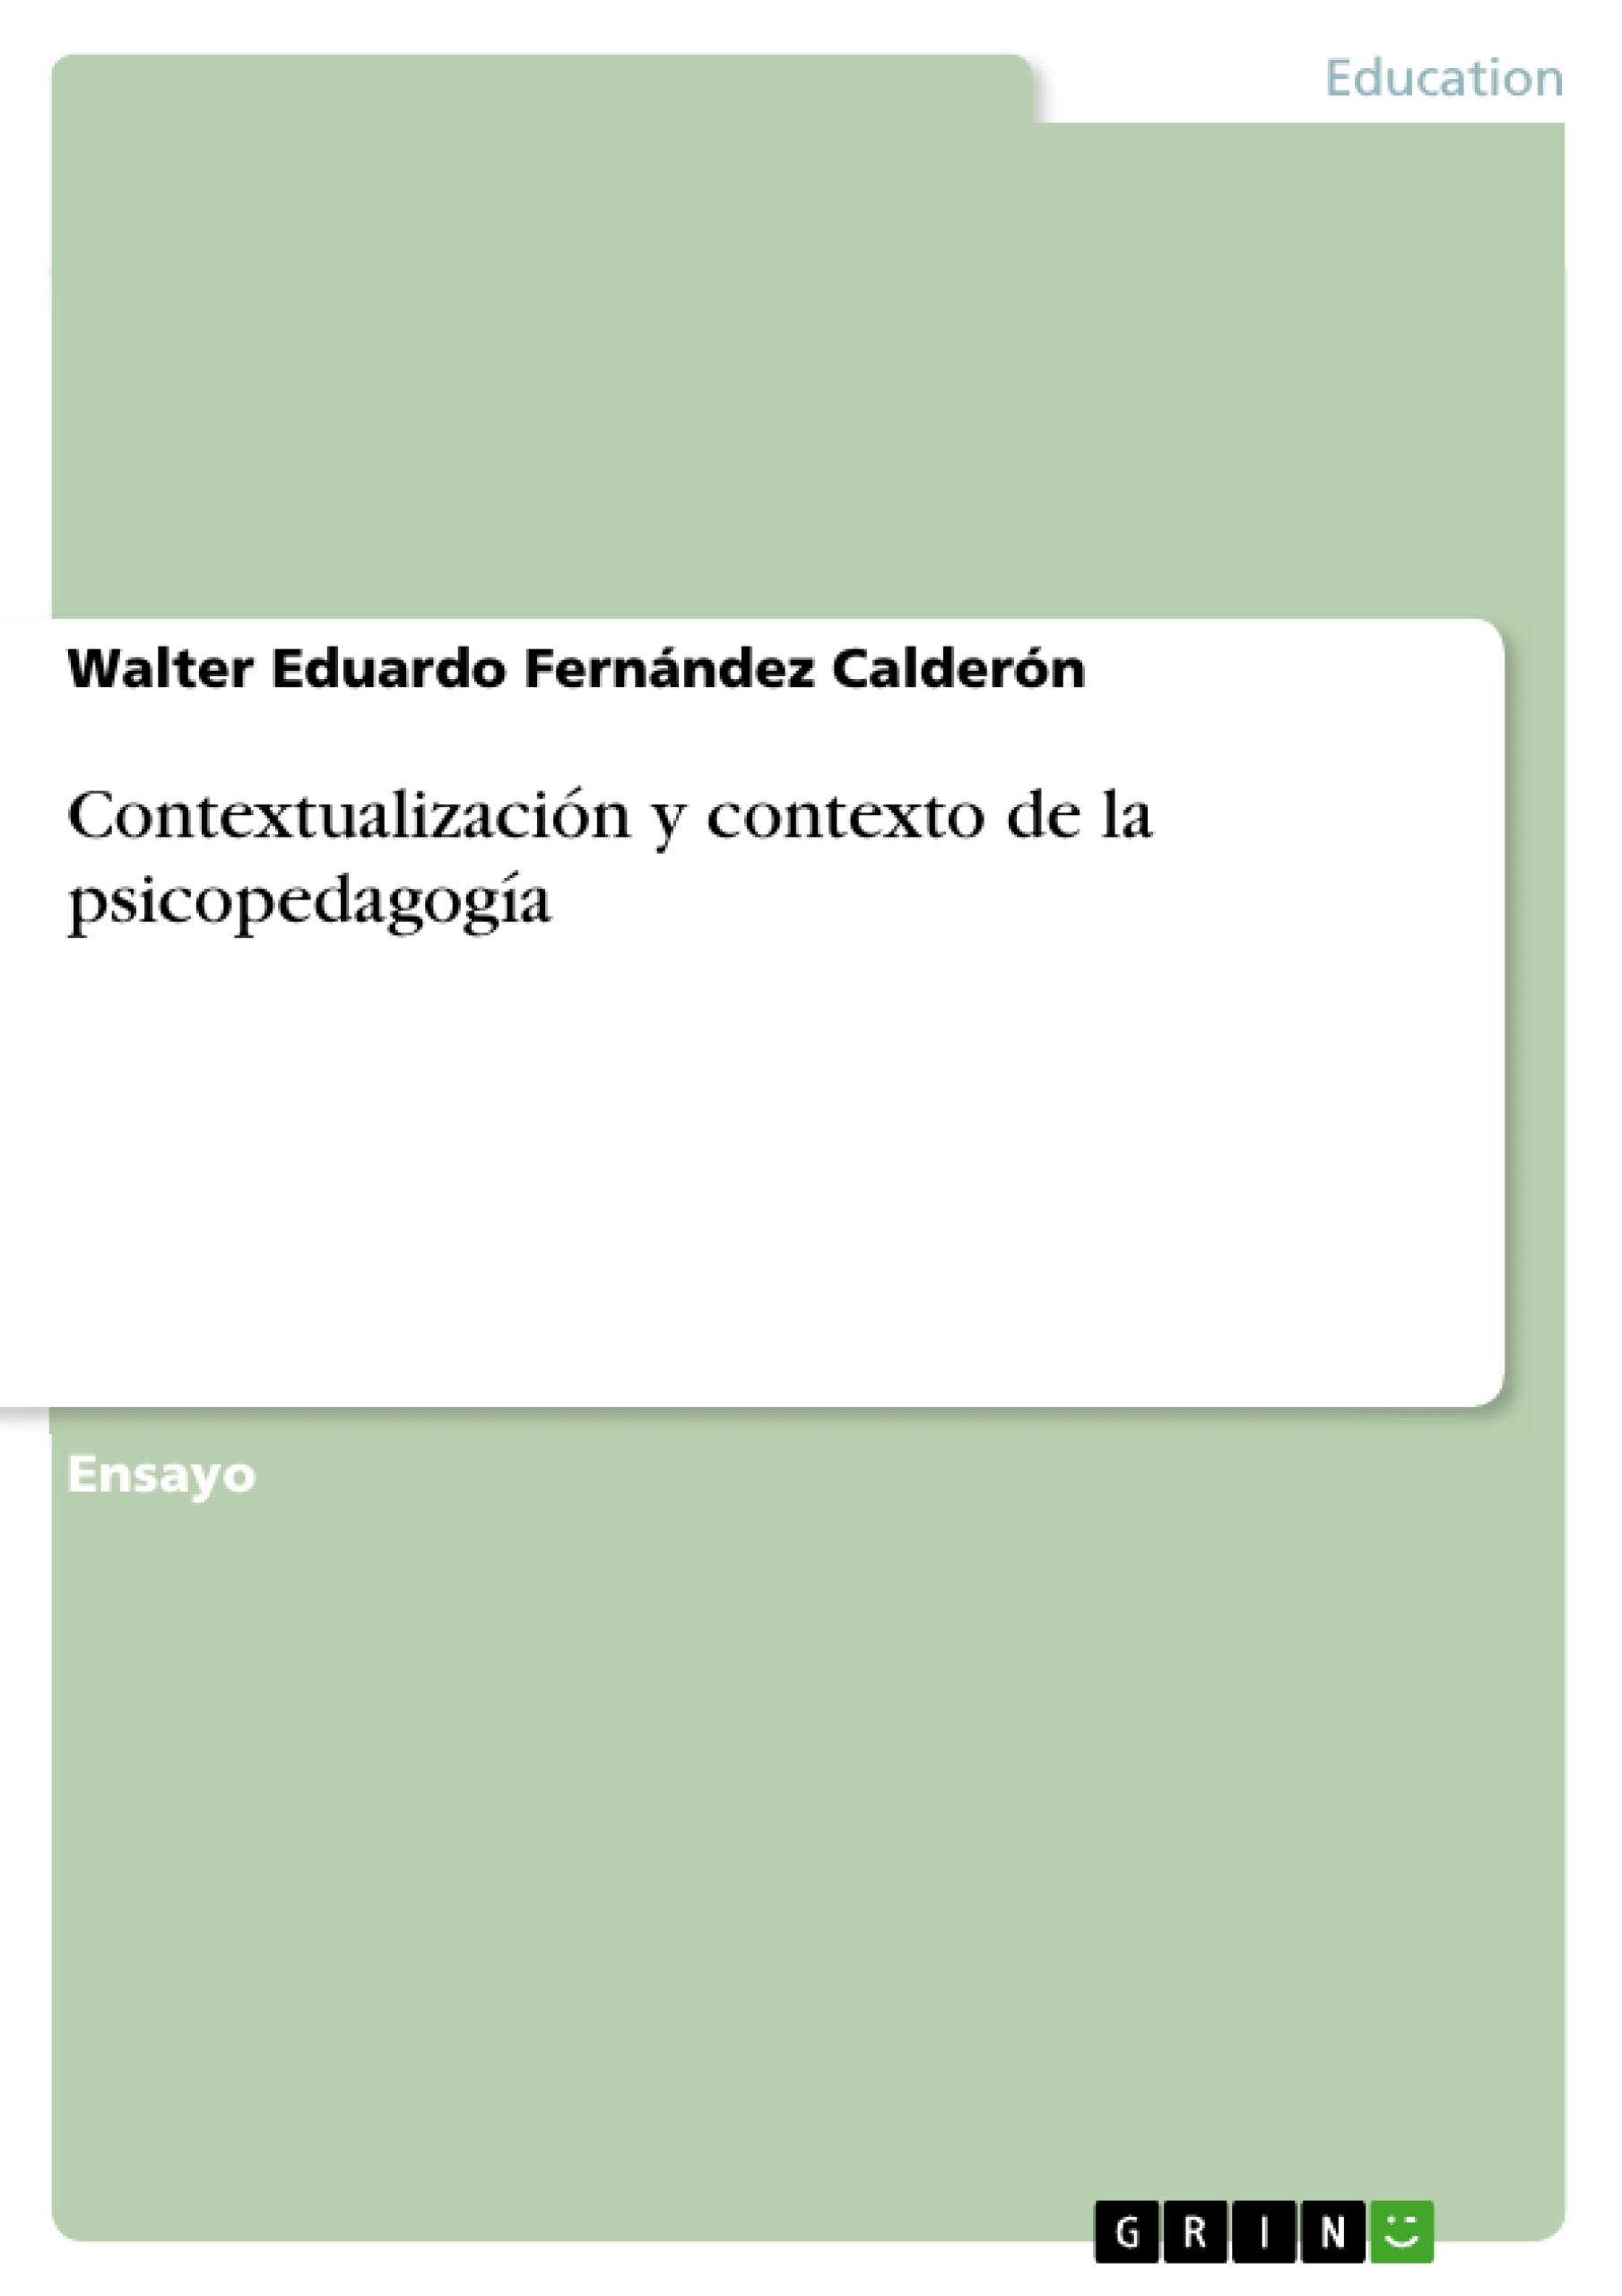 Title: Contextualización y contexto de la psicopedagogía